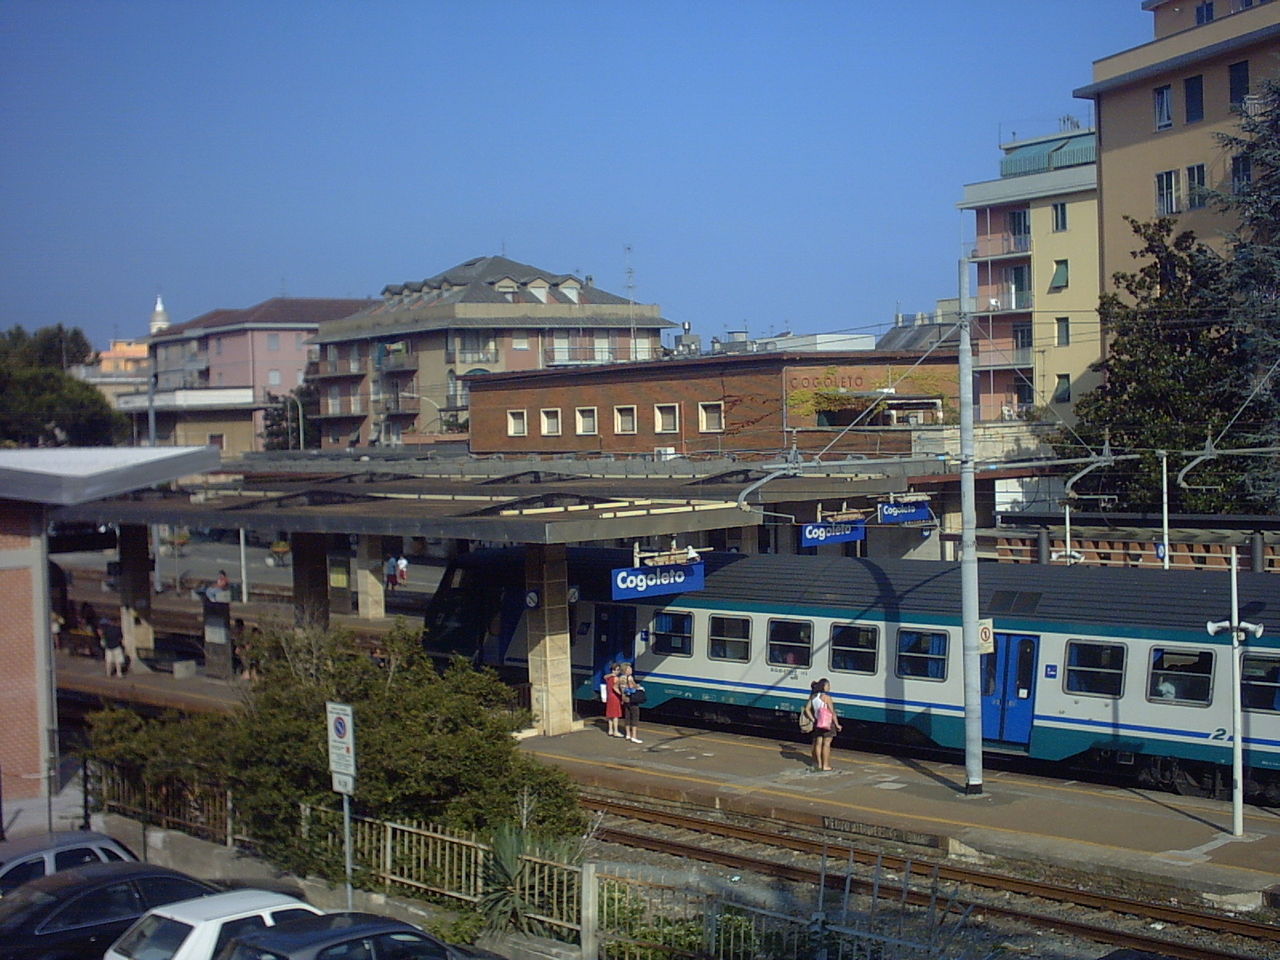 Stazione Ferroviaria - Cogoleto, Genova - 1943